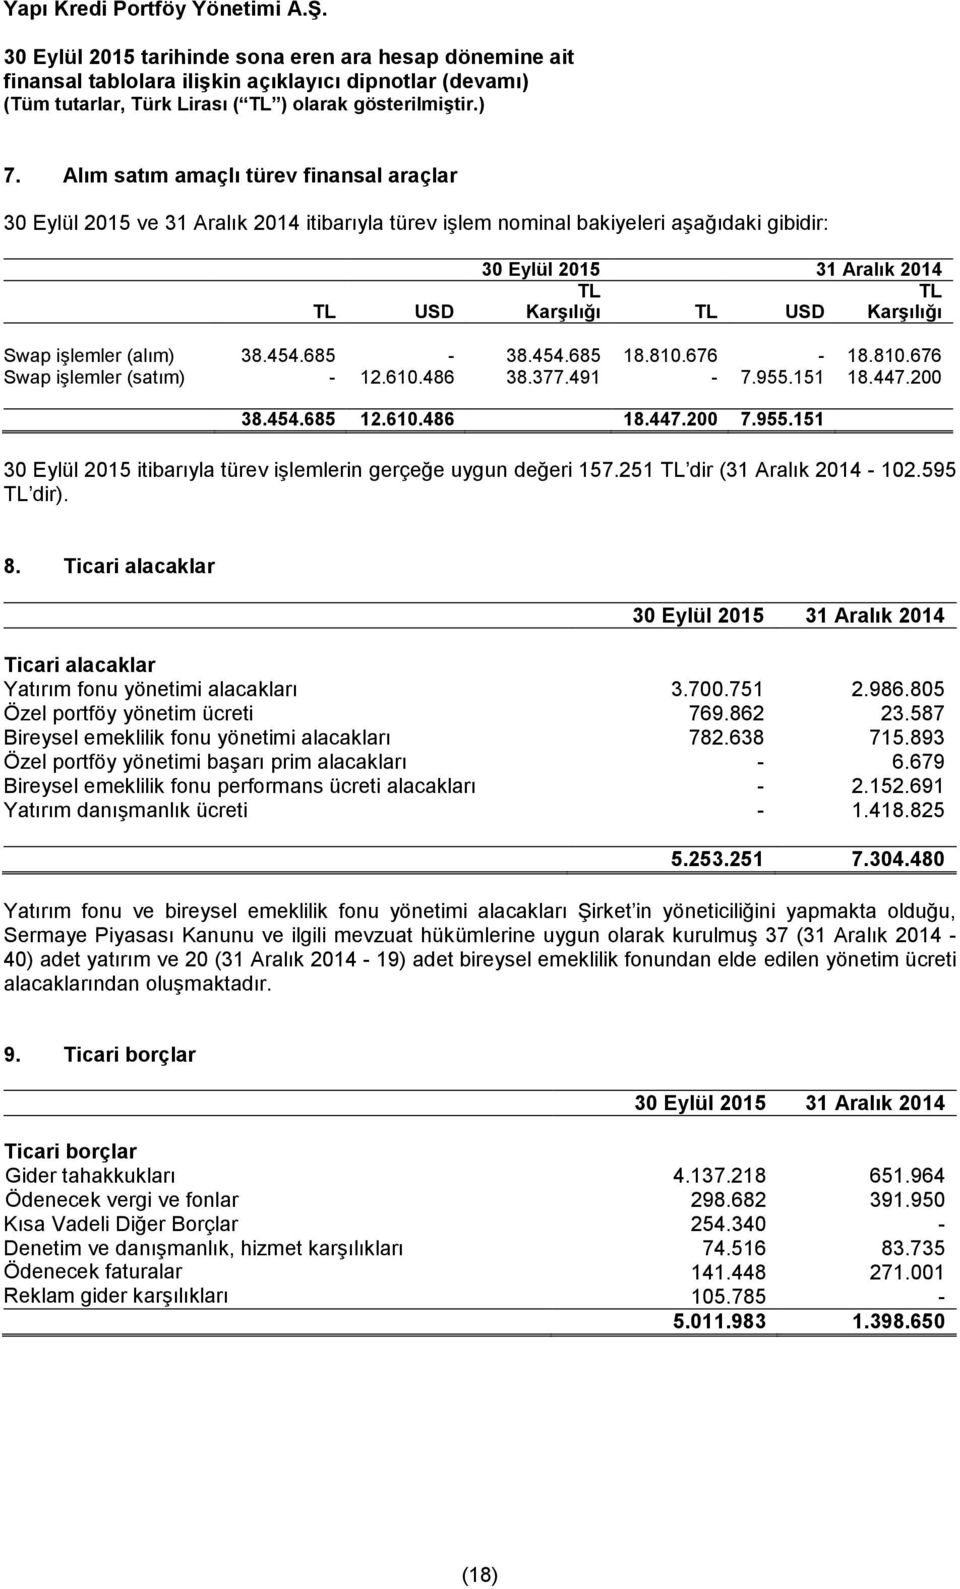 251 TL dir (31 Aralık 2014-102.595 TL dir). 8. Ticari alacaklar 30 Eylül 2015 31 Aralık 2014 Ticari alacaklar Yatırım fonu yönetimi alacakları 3.700.751 2.986.805 Özel portföy yönetim ücreti 769.